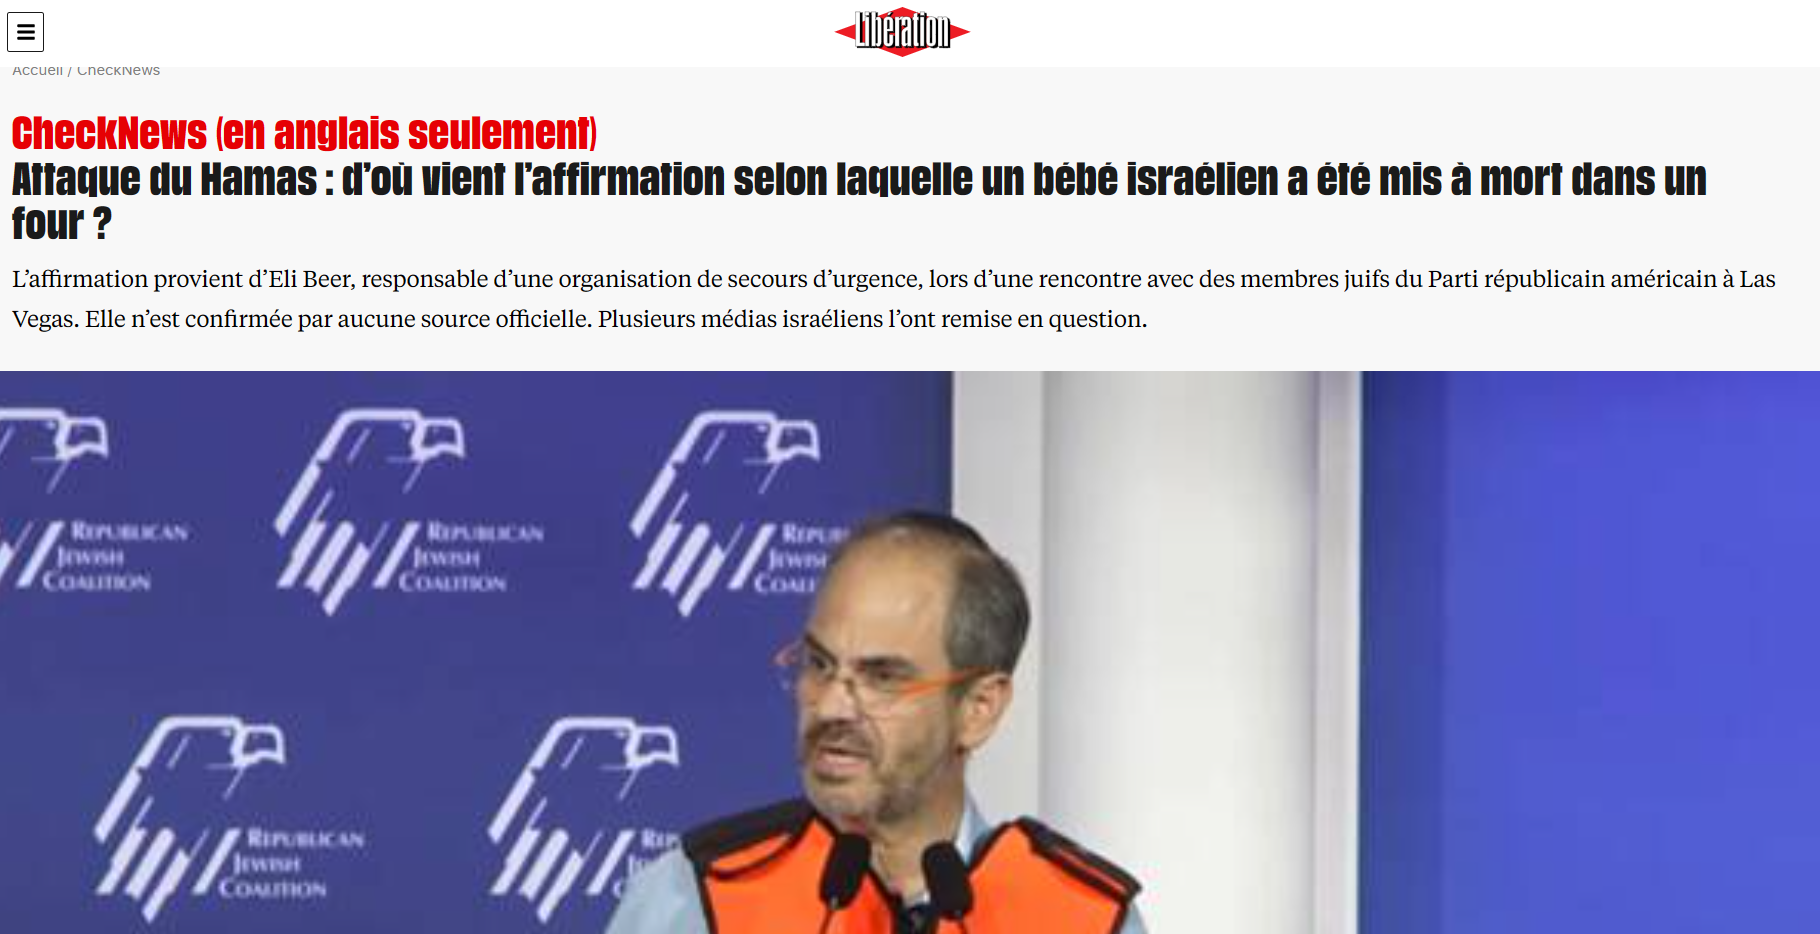 Mensonge du bébé israélien mis à mort dans un four par le Hamas, Libération avoue la manipulation